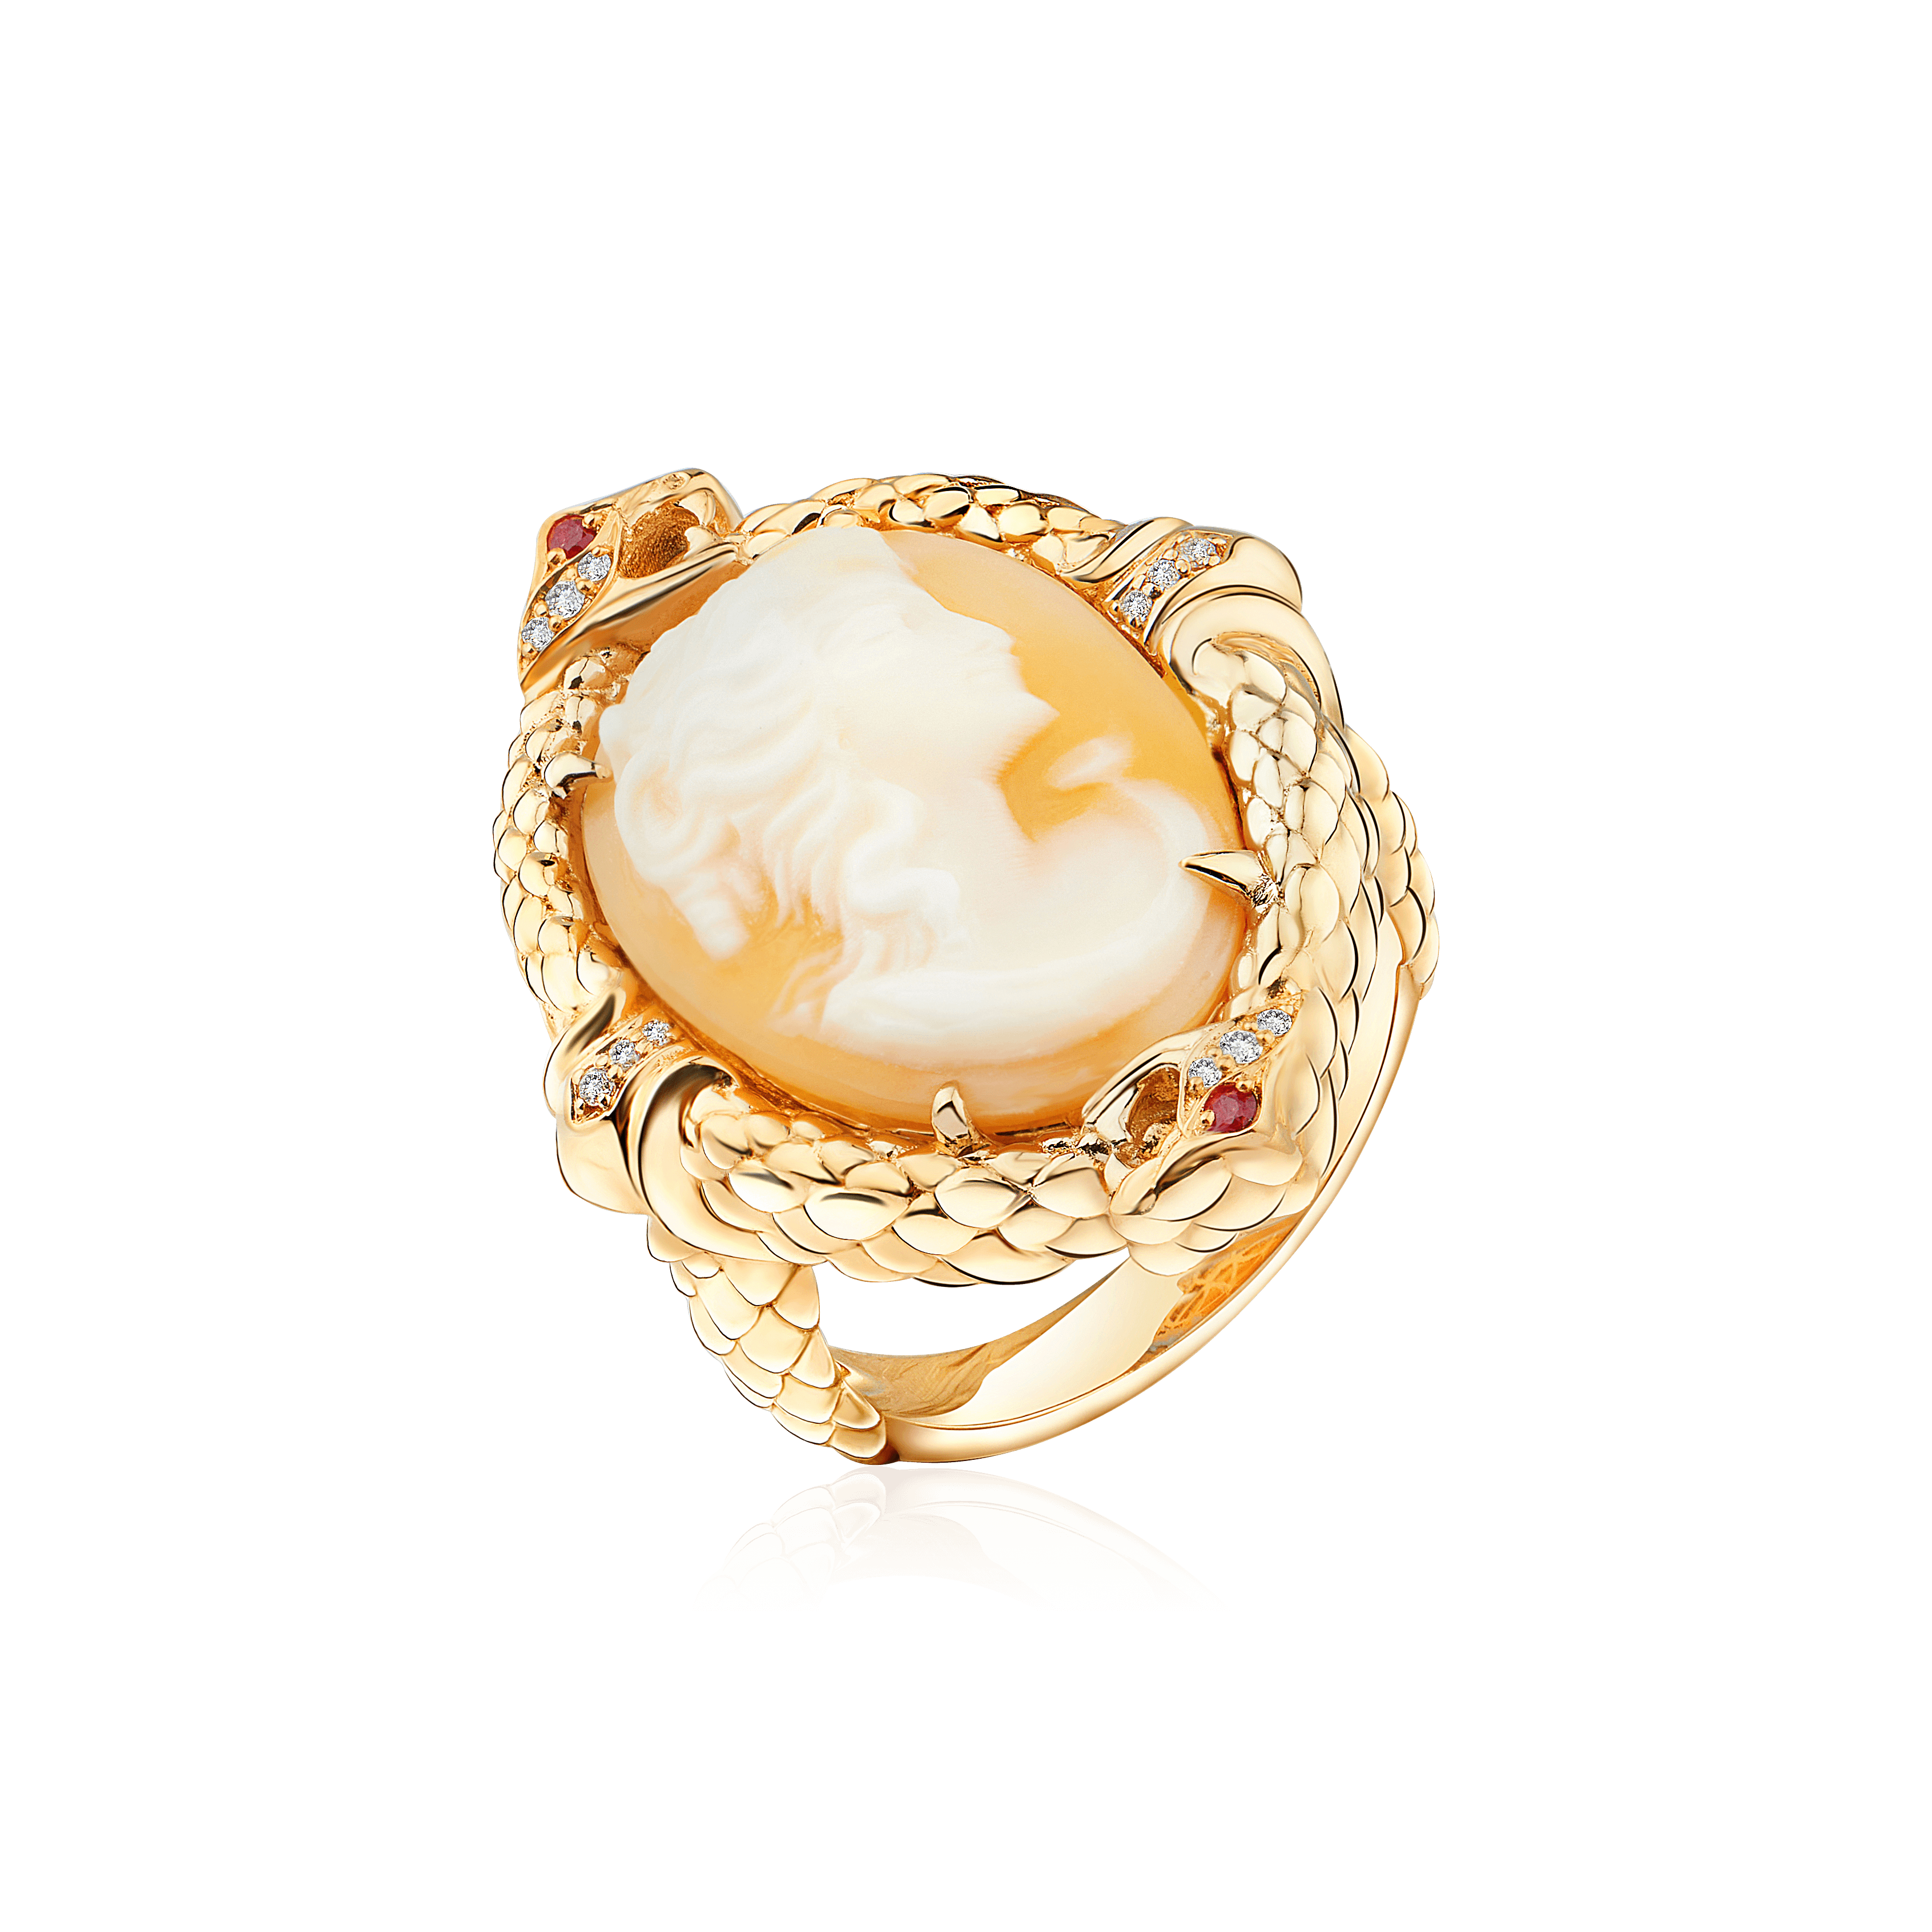 Кольцо с камеей на раковине, рубинами, бриллиантами из желтого золота 585 пробы (арт. 104868)